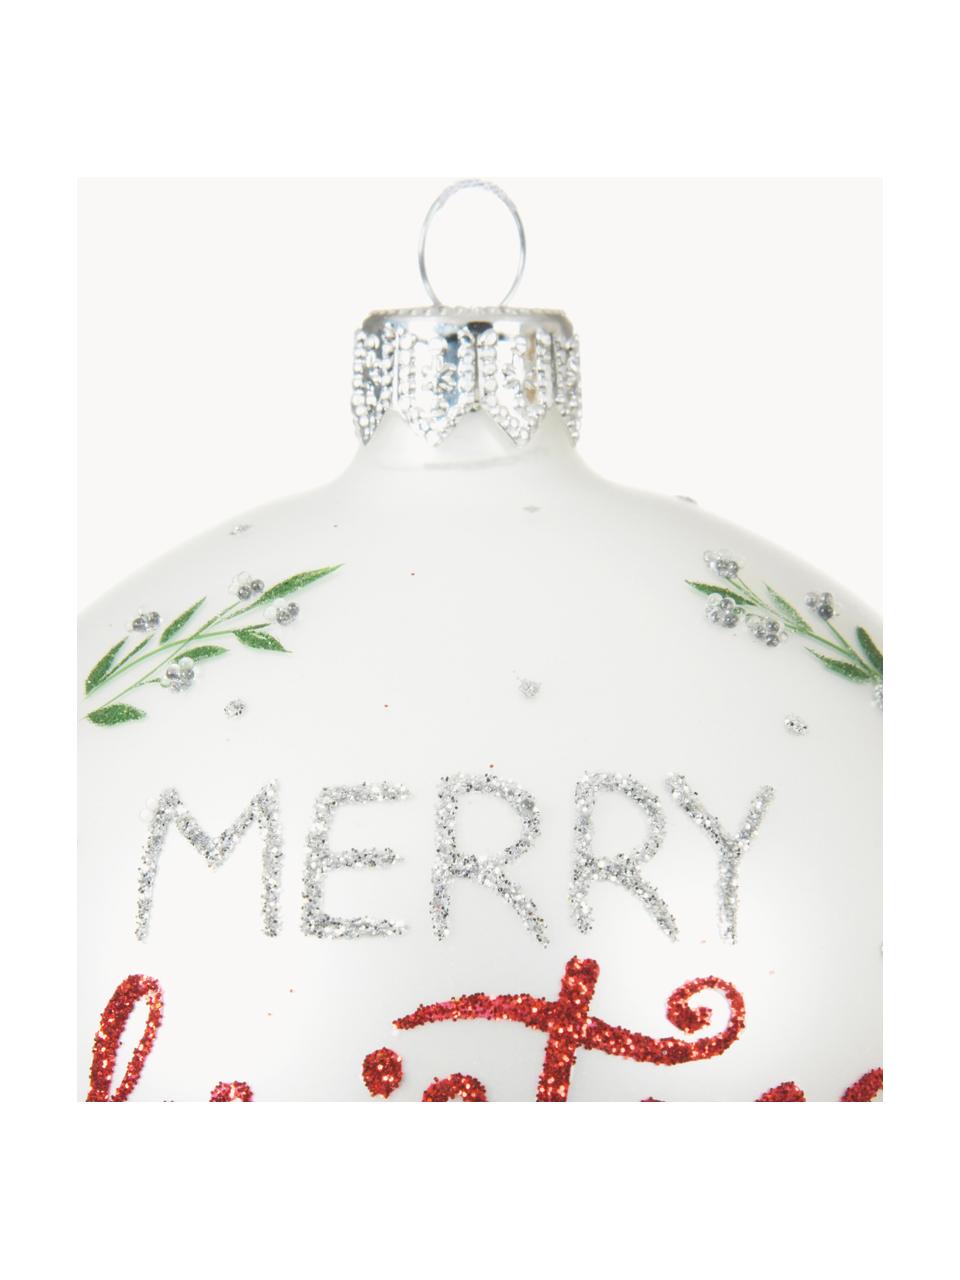 Bombka Merry Christmas, 2 szt., Biały, czerwony, odcienie srebrnego, zielony, Ø 8 cm